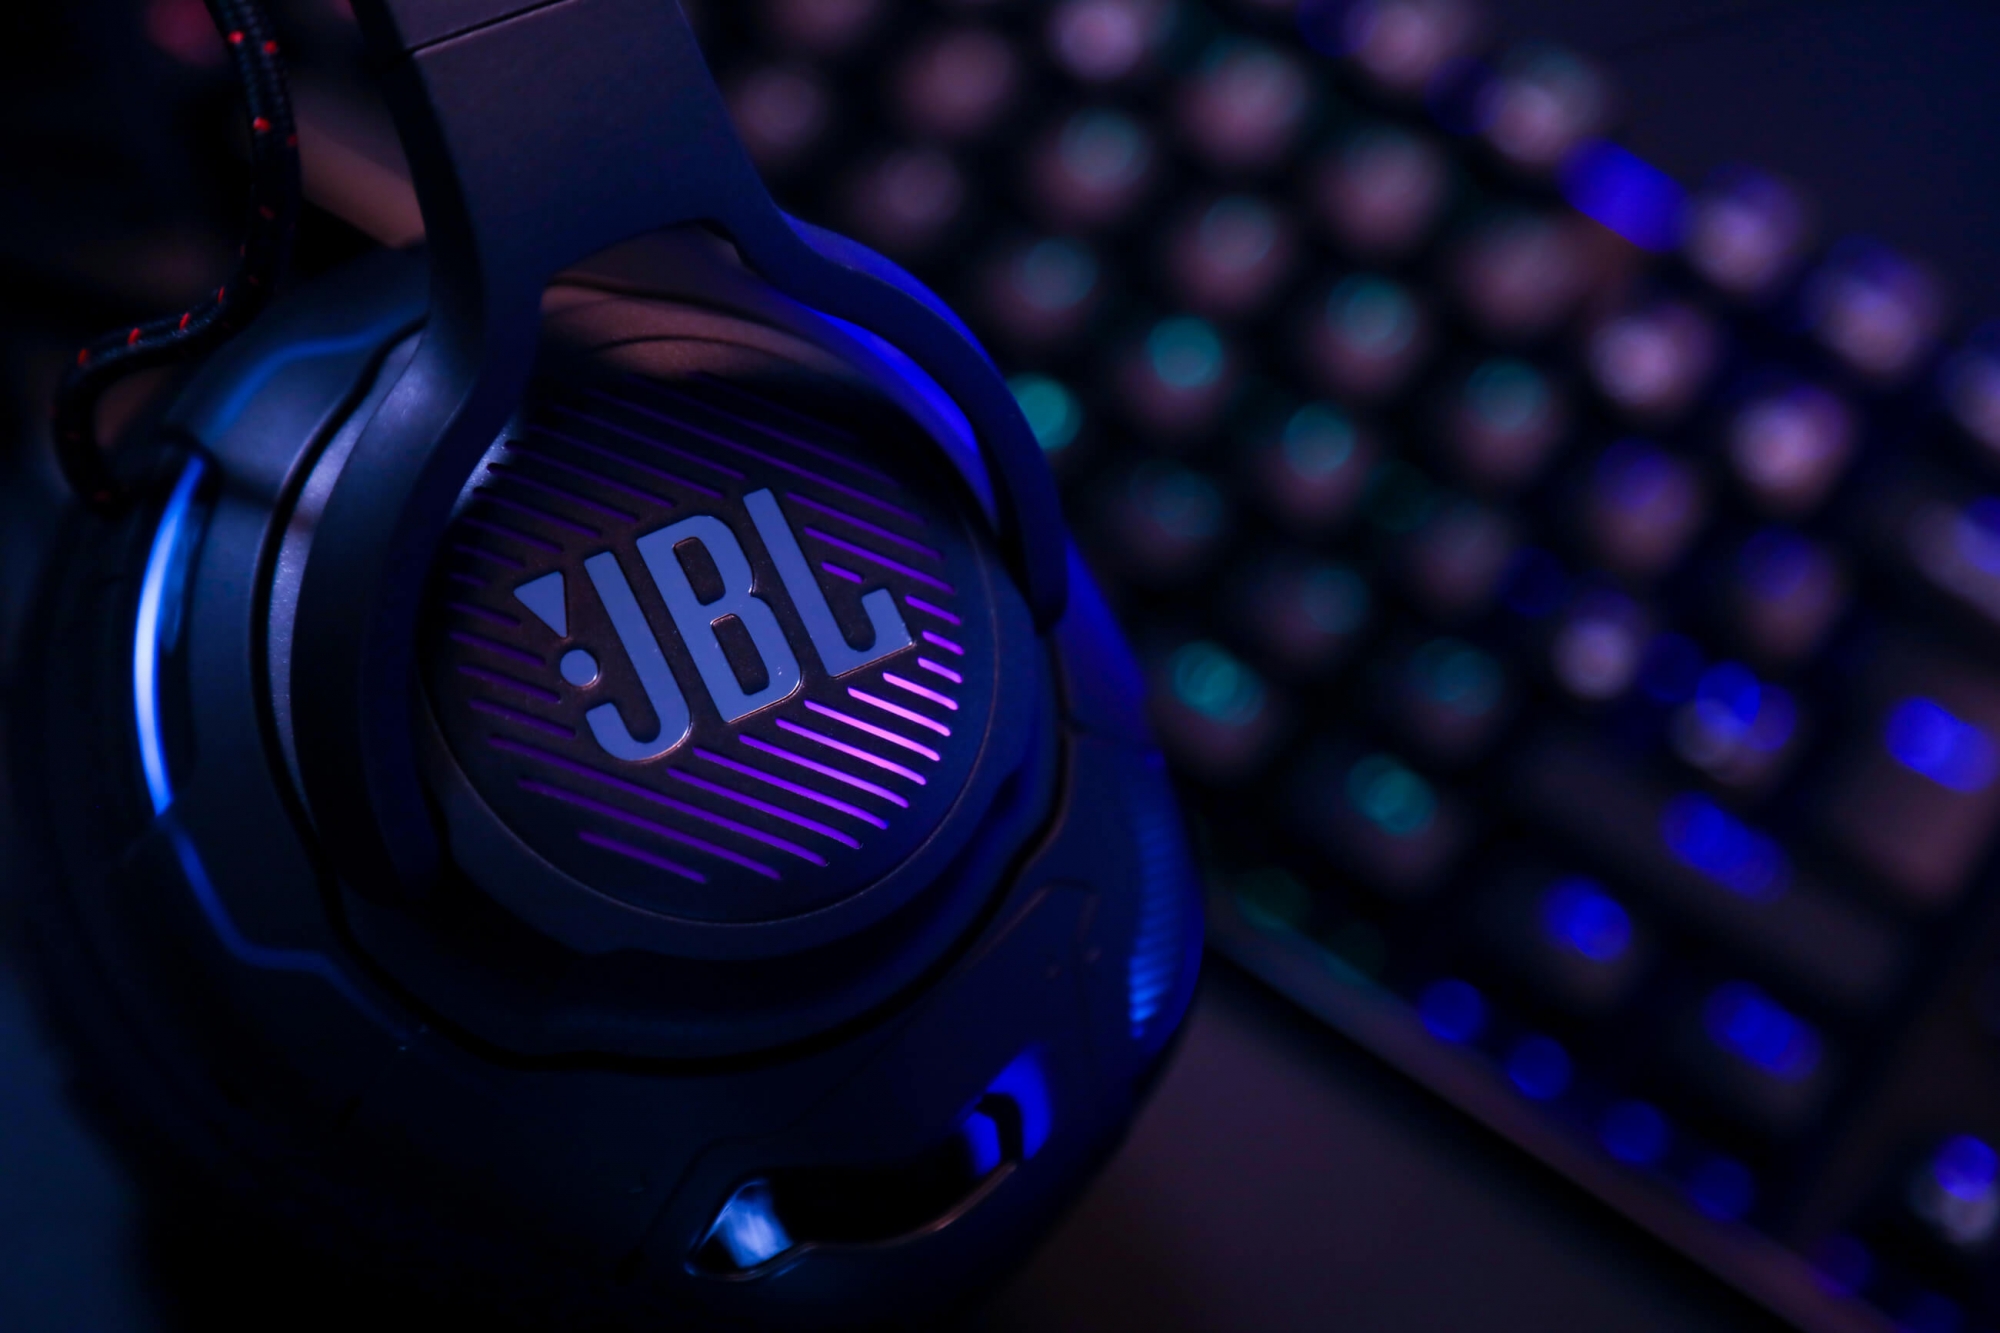 JBL Quantum ONE gamer headset